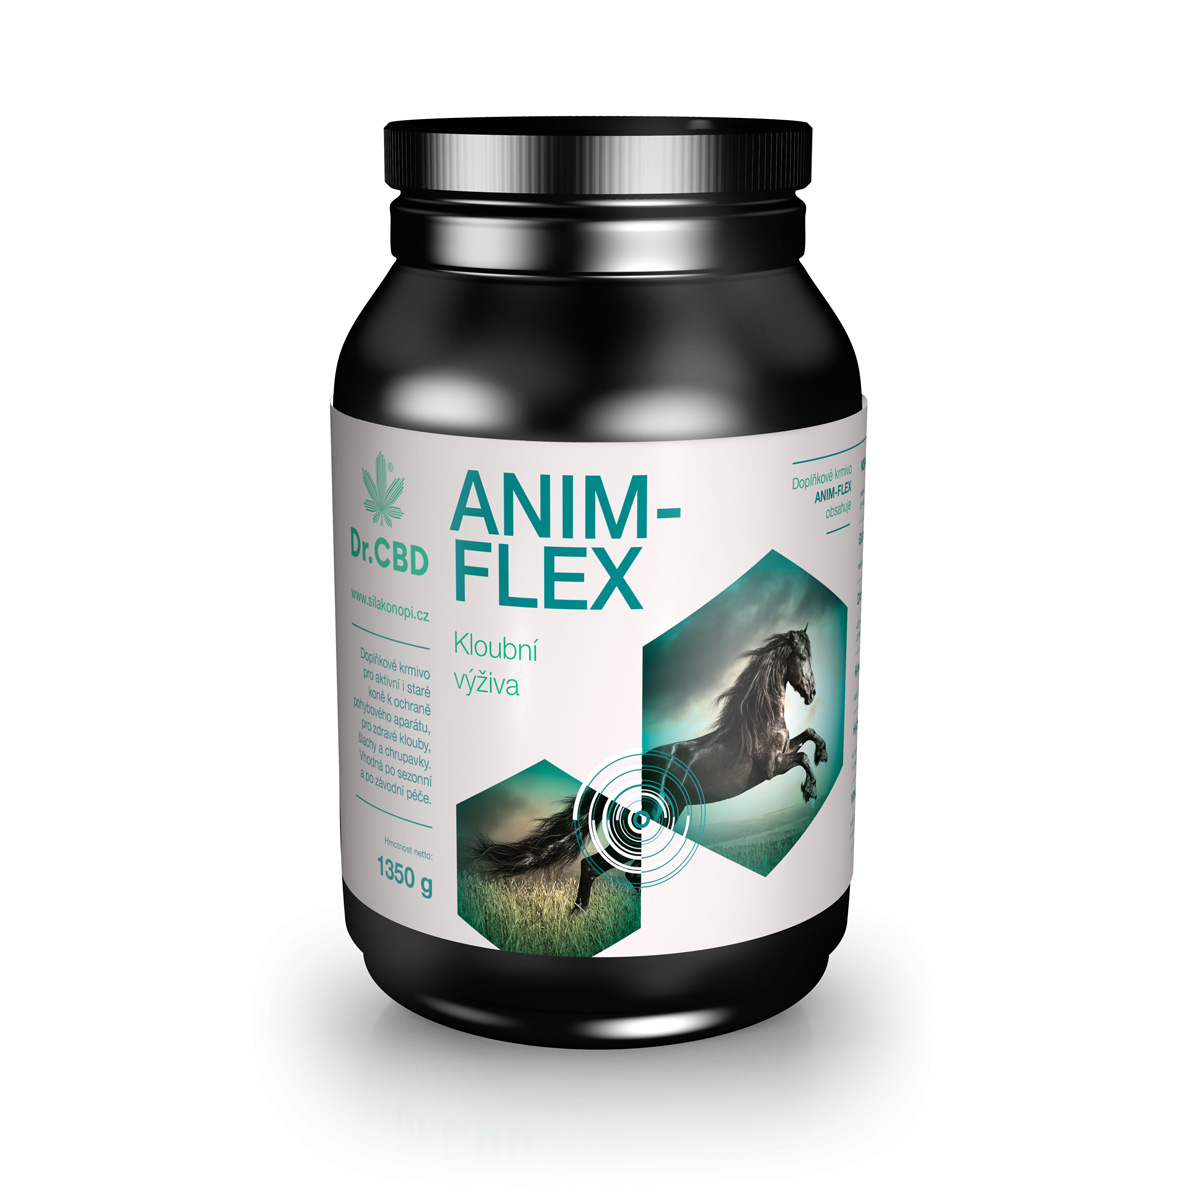 Dr. CBD Anim-flex 1350 g - kloubní výživa